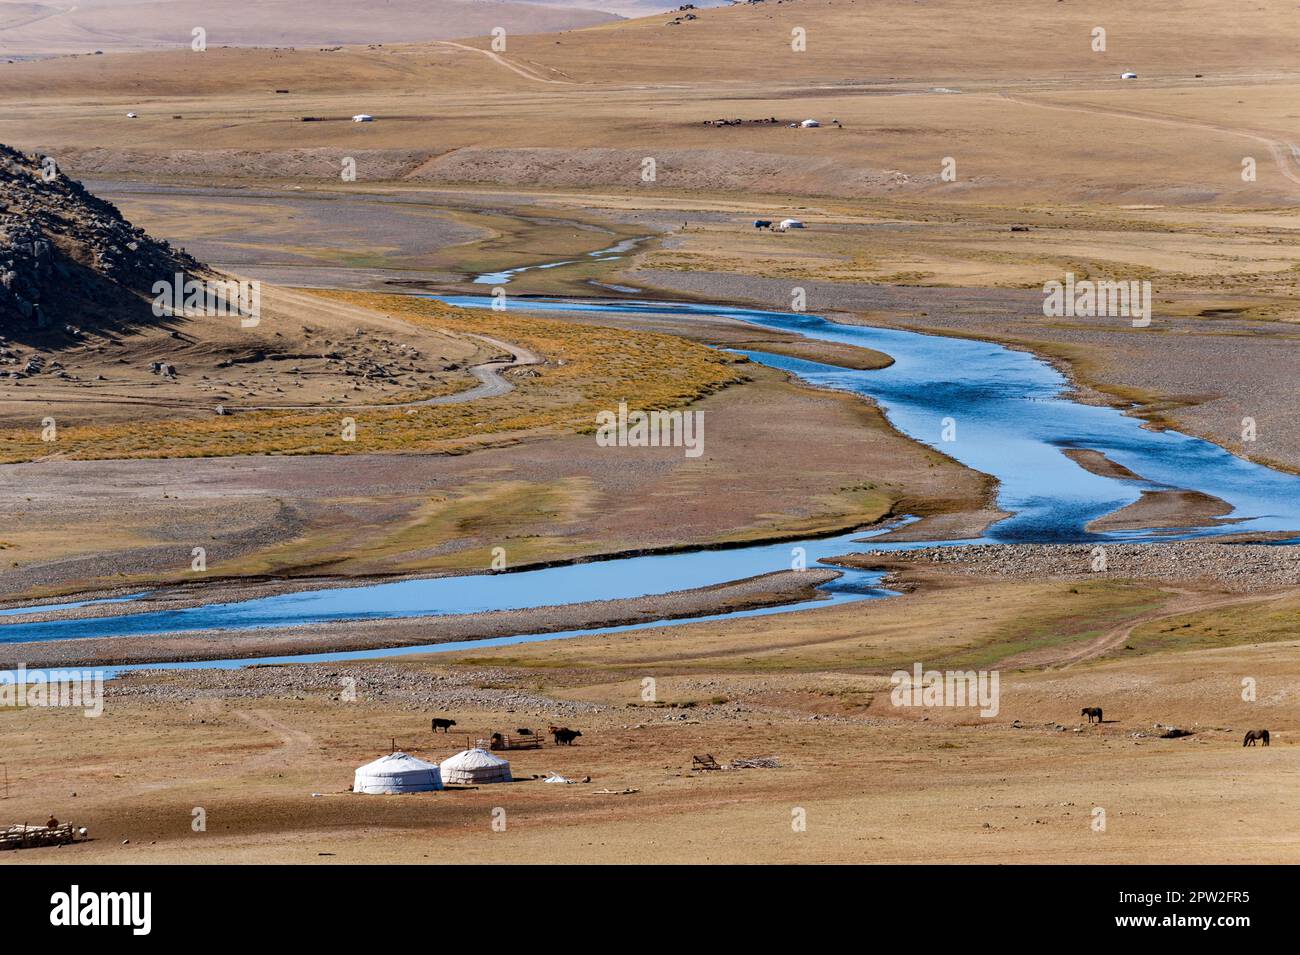 Un camp de yourtes de nomades mongoles à un virage fluvial dans la steppe de Mongolie, en Asie centrale Banque D'Images